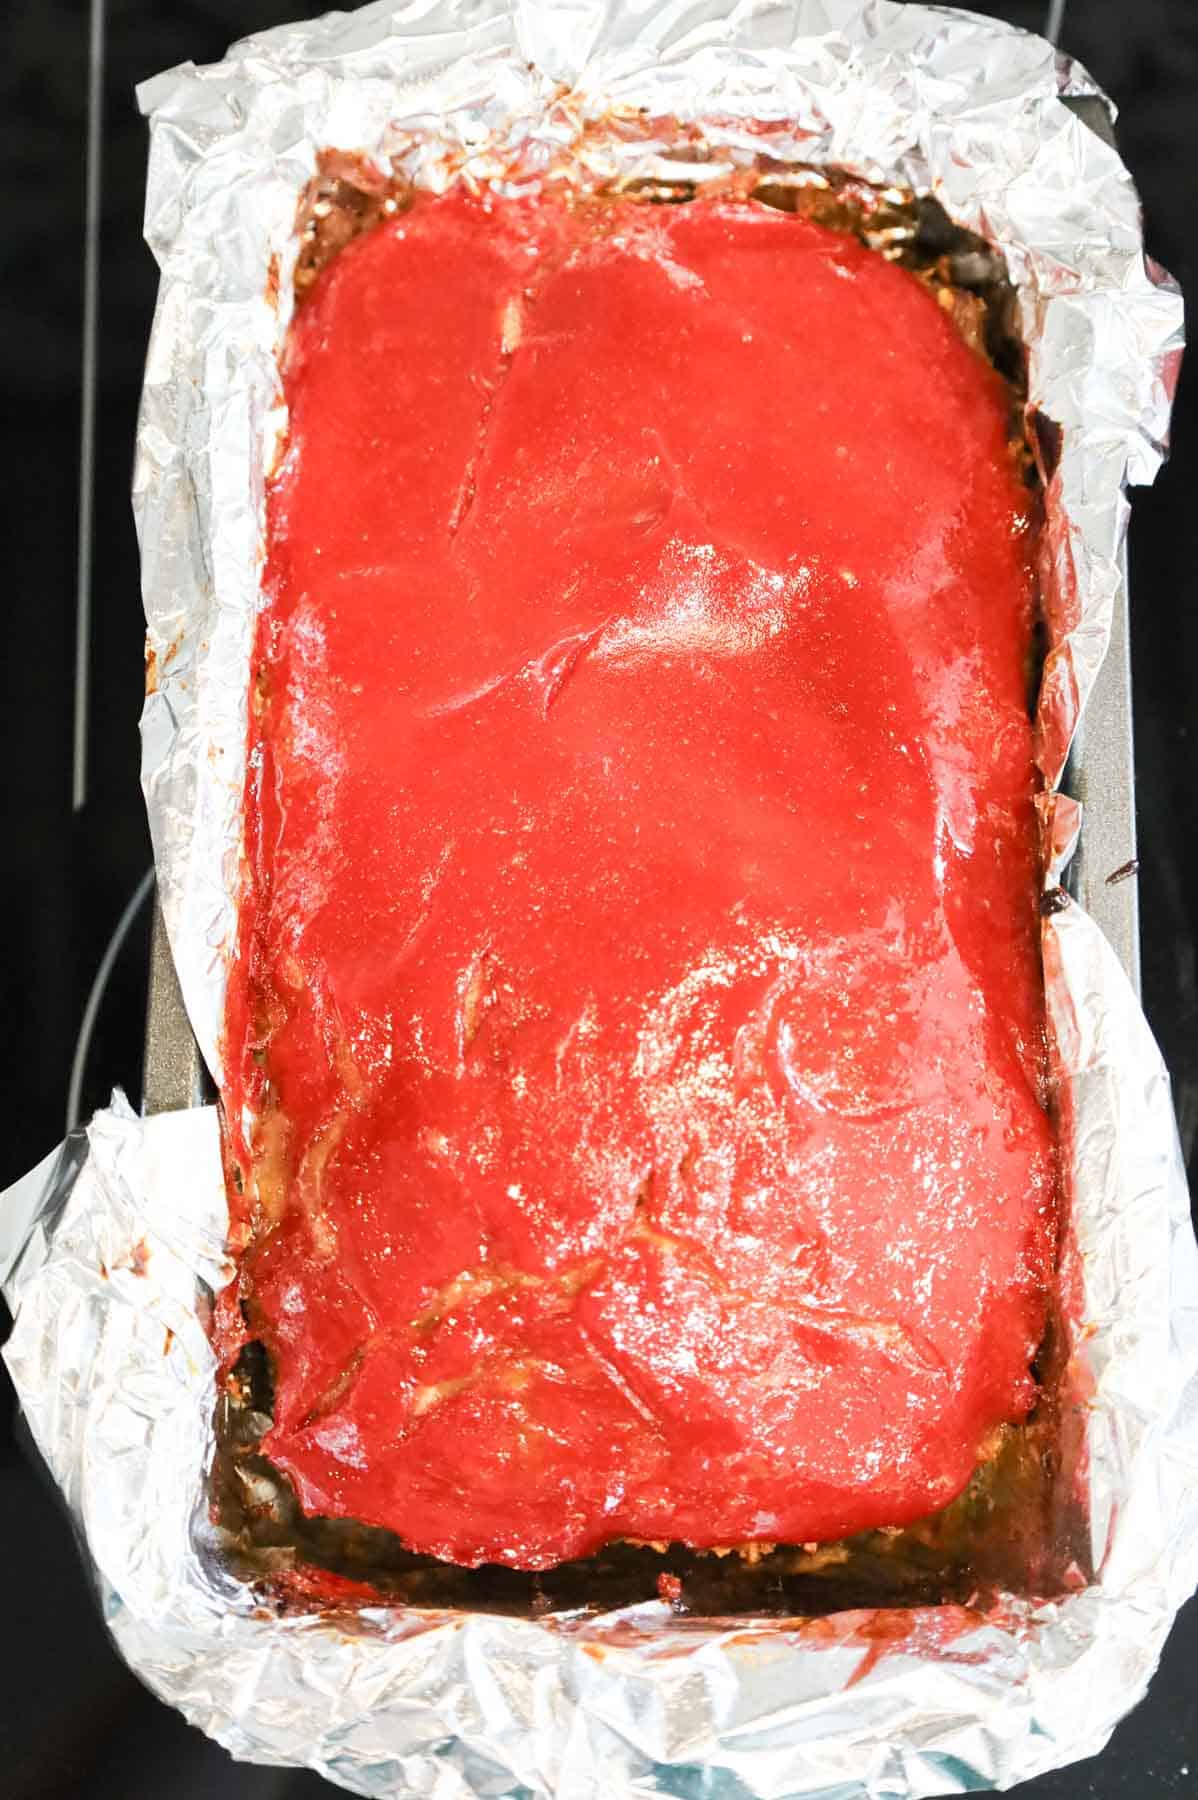 meatloaf after baking